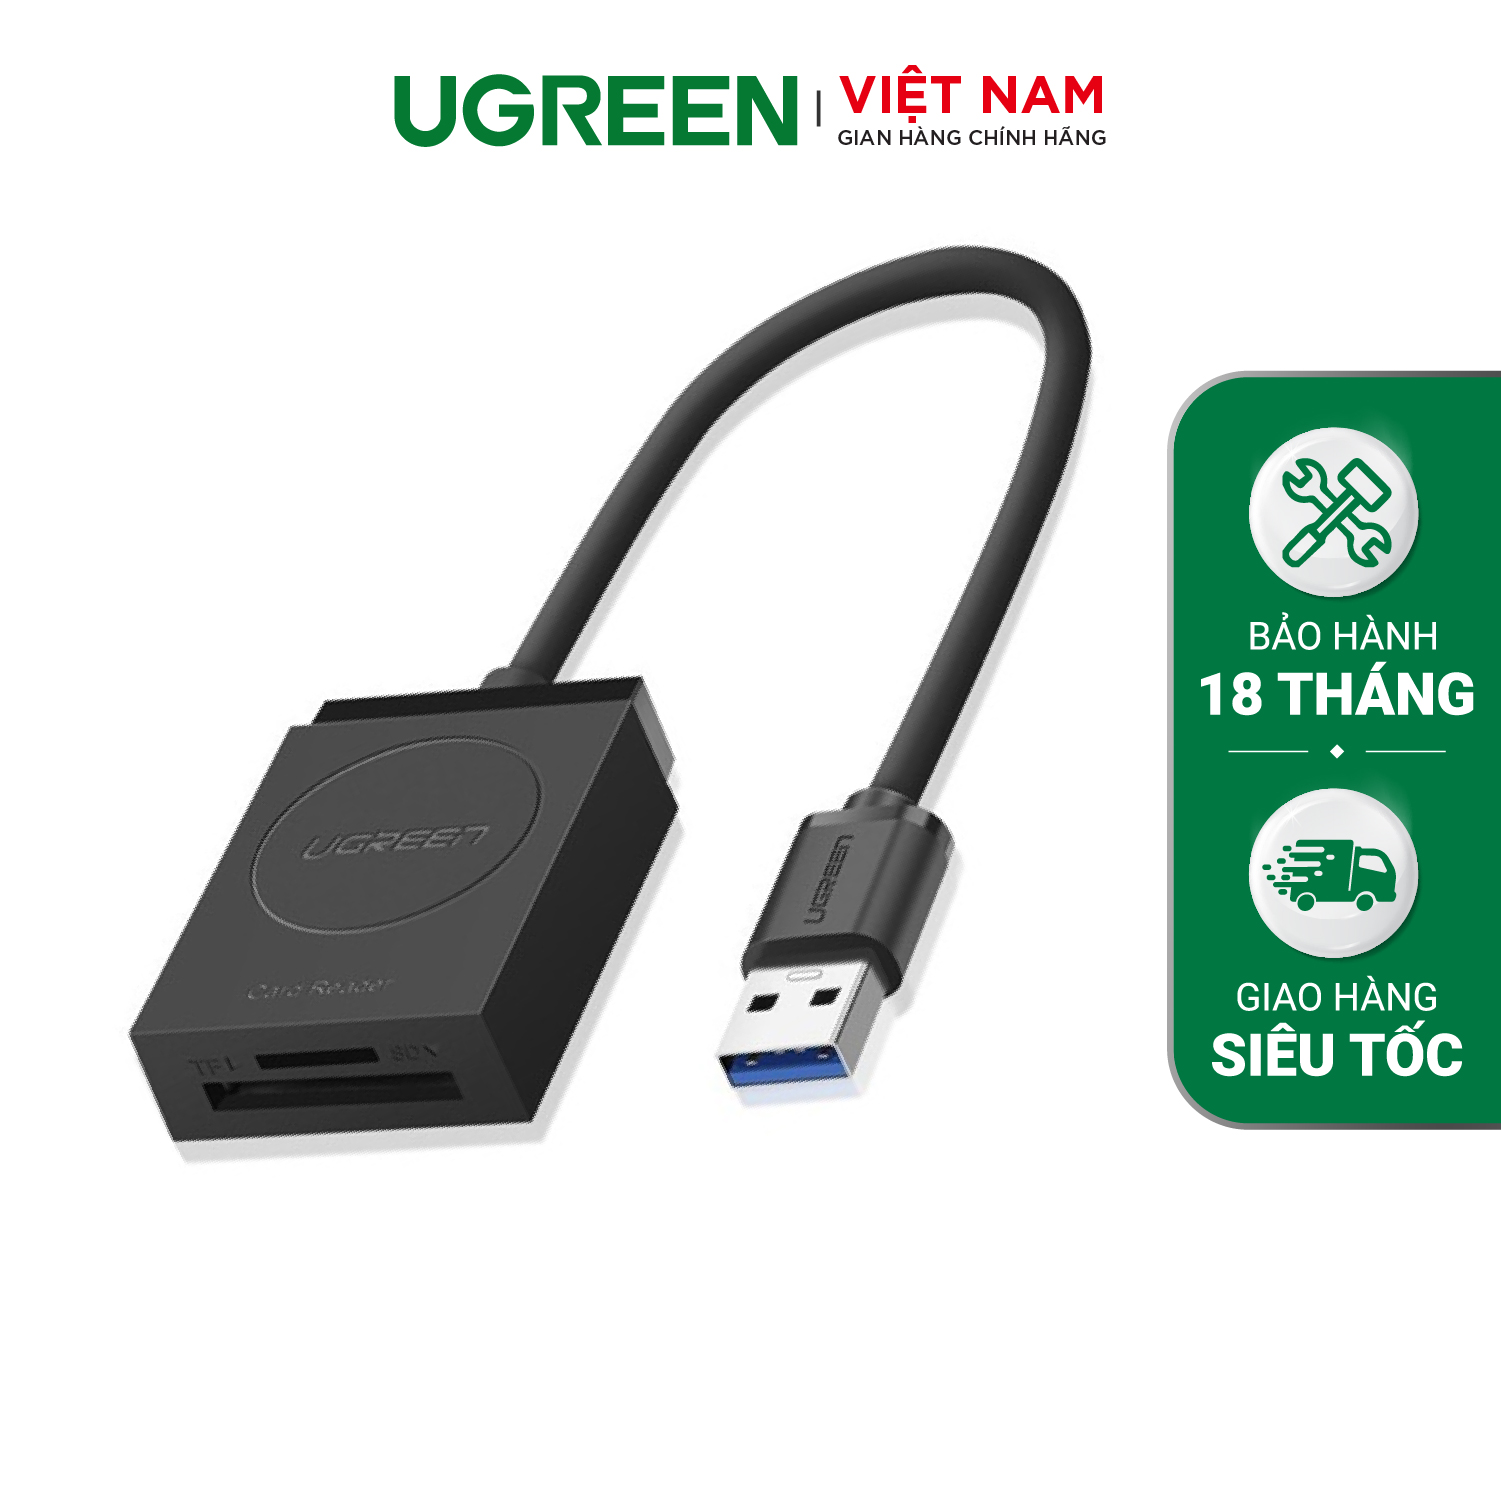 Đầu đọc thẻ USB 3.0 Card Reader Hỗ trợ thẻ TF và SD dài 15CM UGREEN CR127 20250 – Hàng phân phối chính hãng – Bảo hành 18 tháng